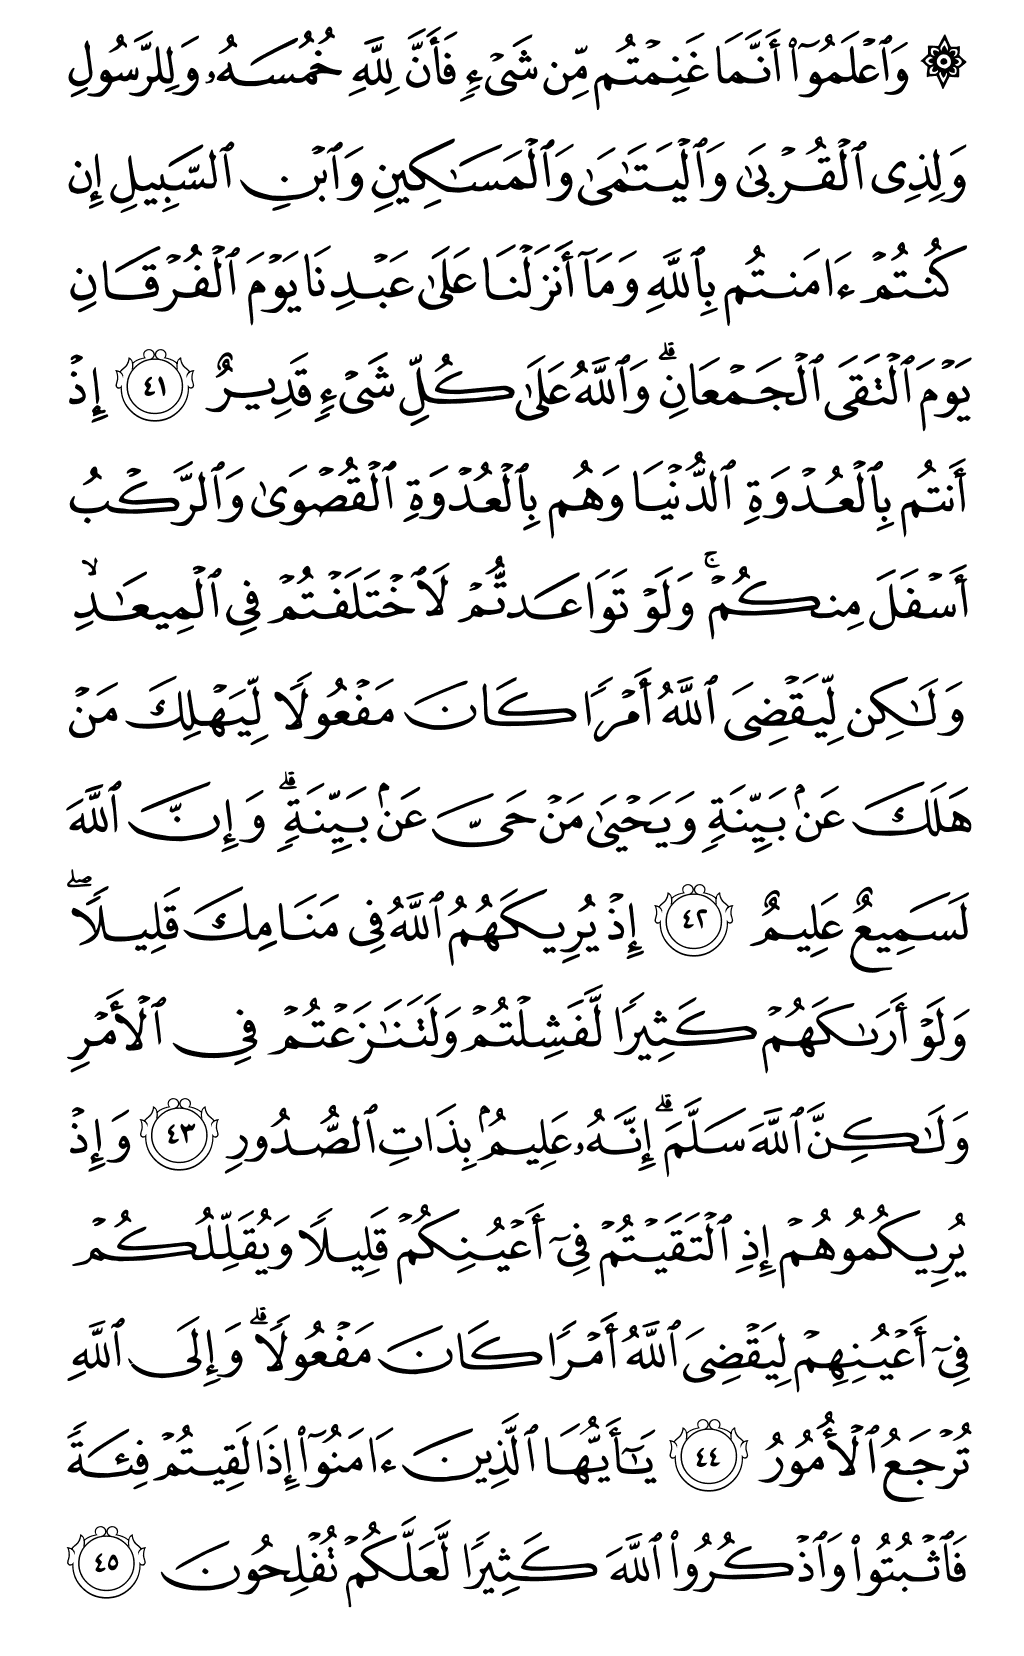 الصفحة رقم 182 من القرآن الكريم